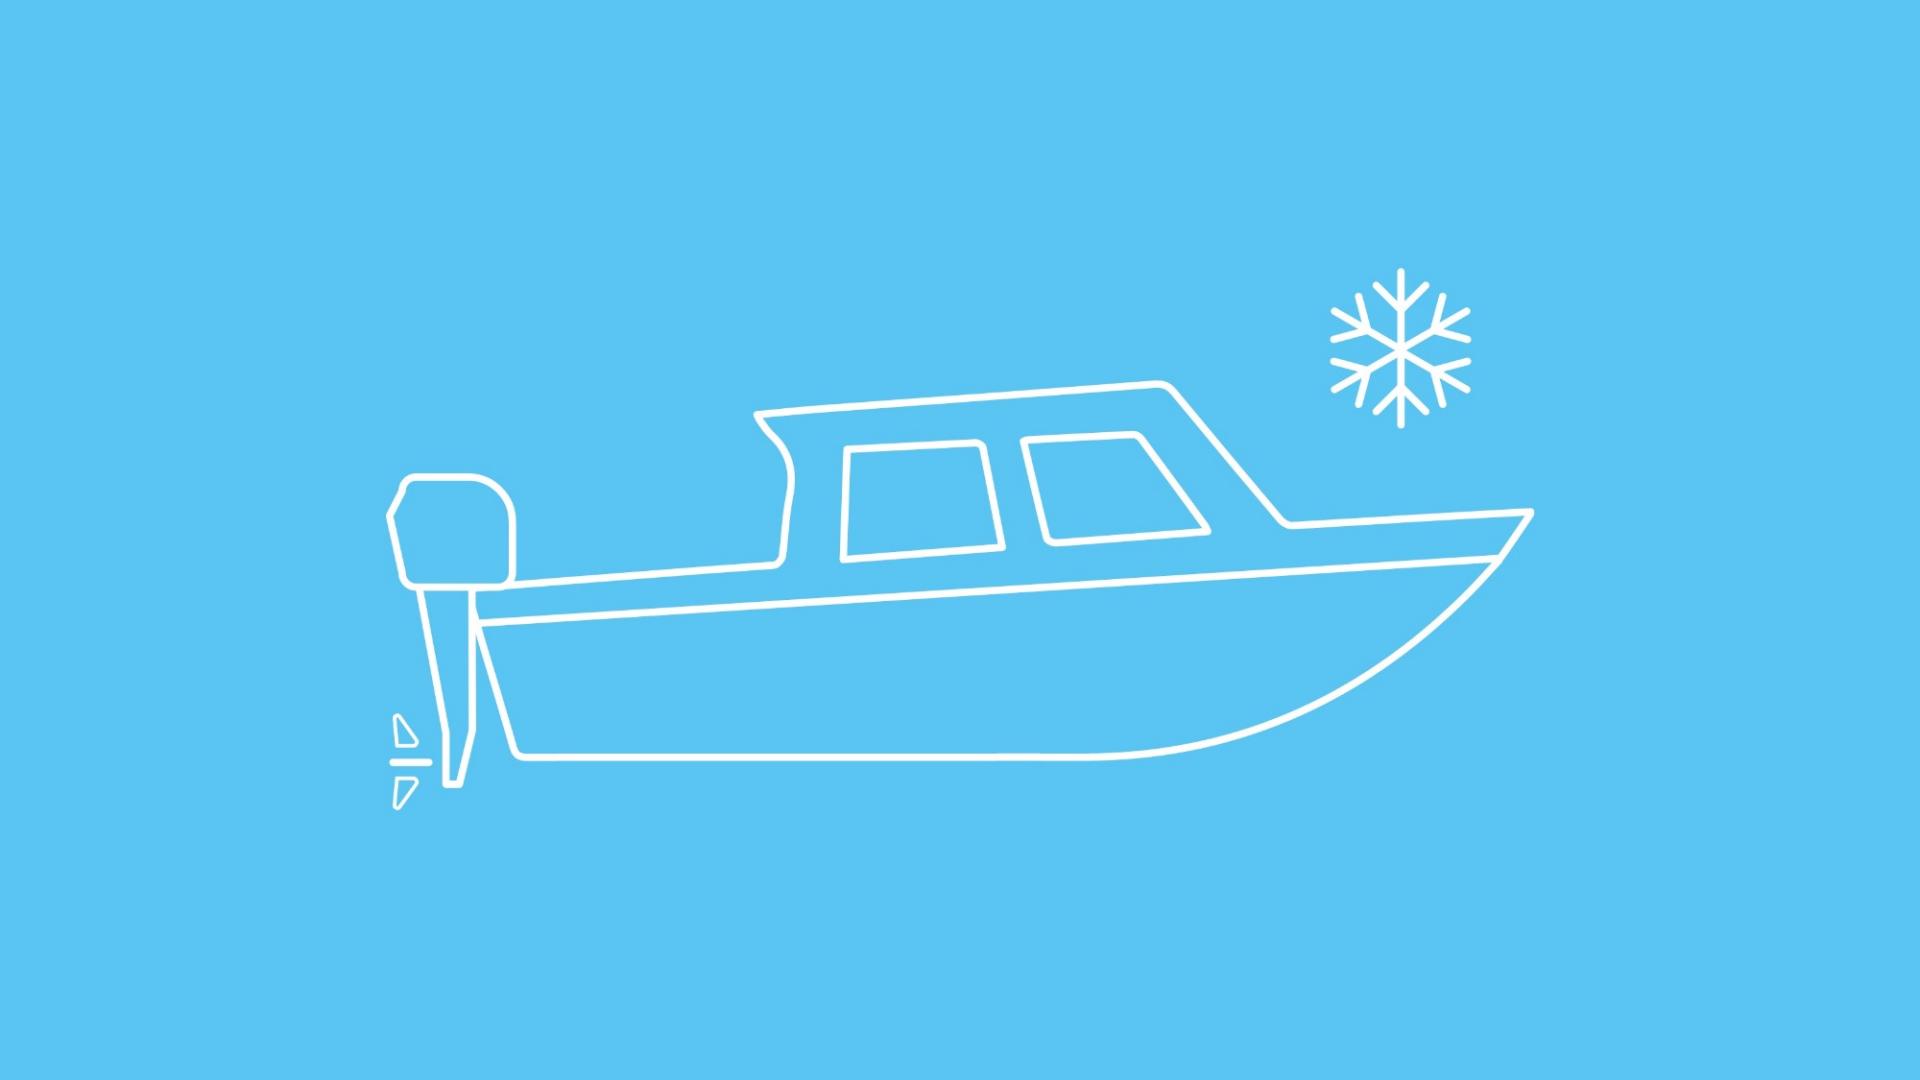 Die Grafik zeigt ein Motorboot mit einer Schneeflocke, um mögliche Frostschäden zu symbolisieren.  